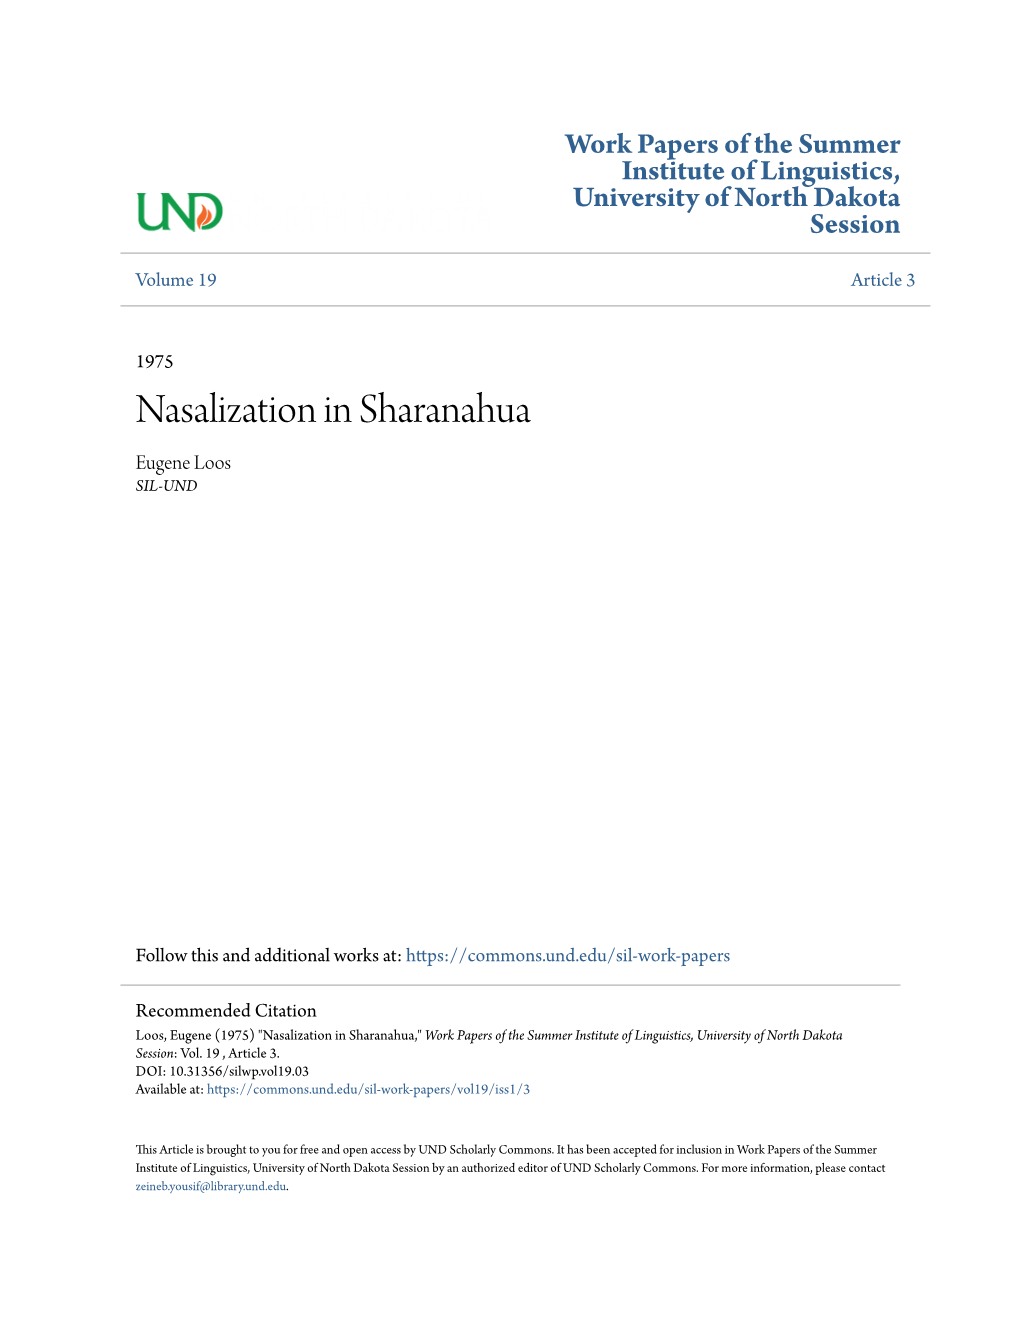 Nasalization in Sharanahua Eugene Loos SIL-UND